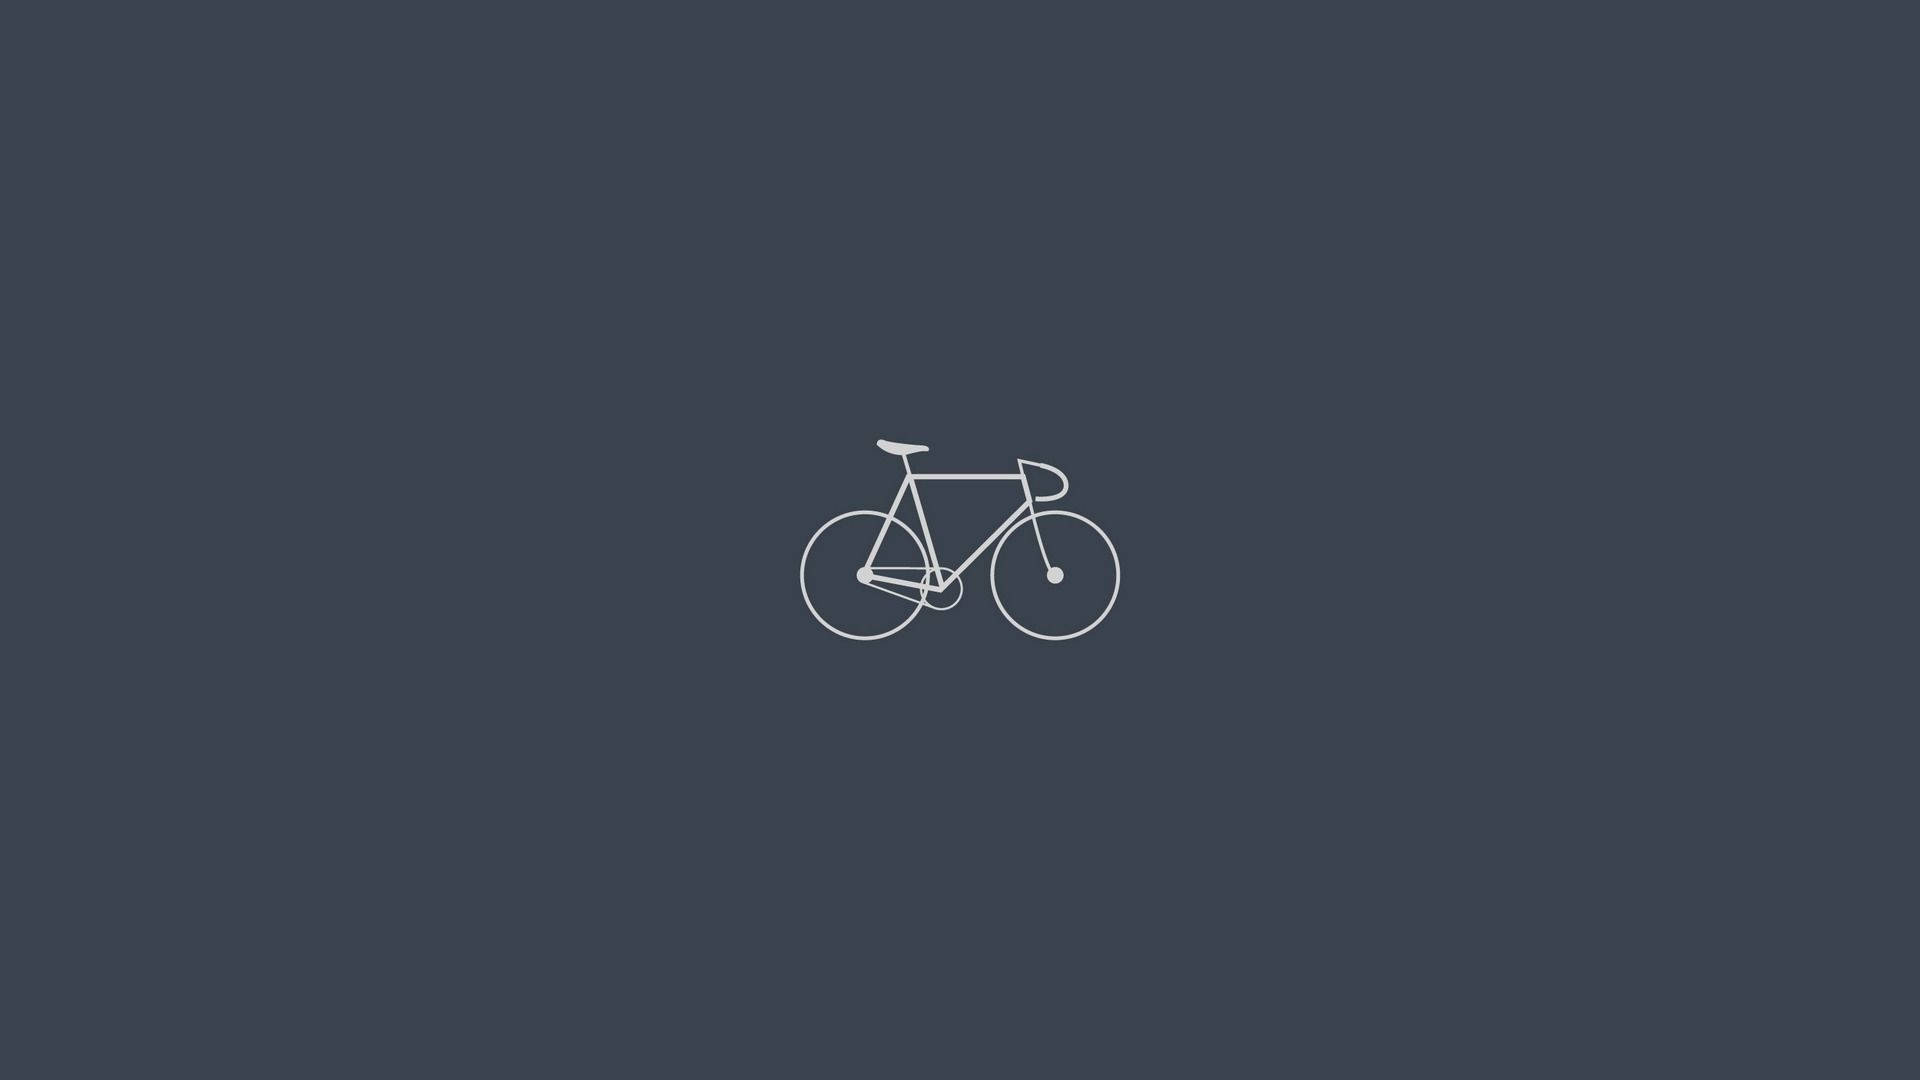 Simple Desktop Bicycle Background